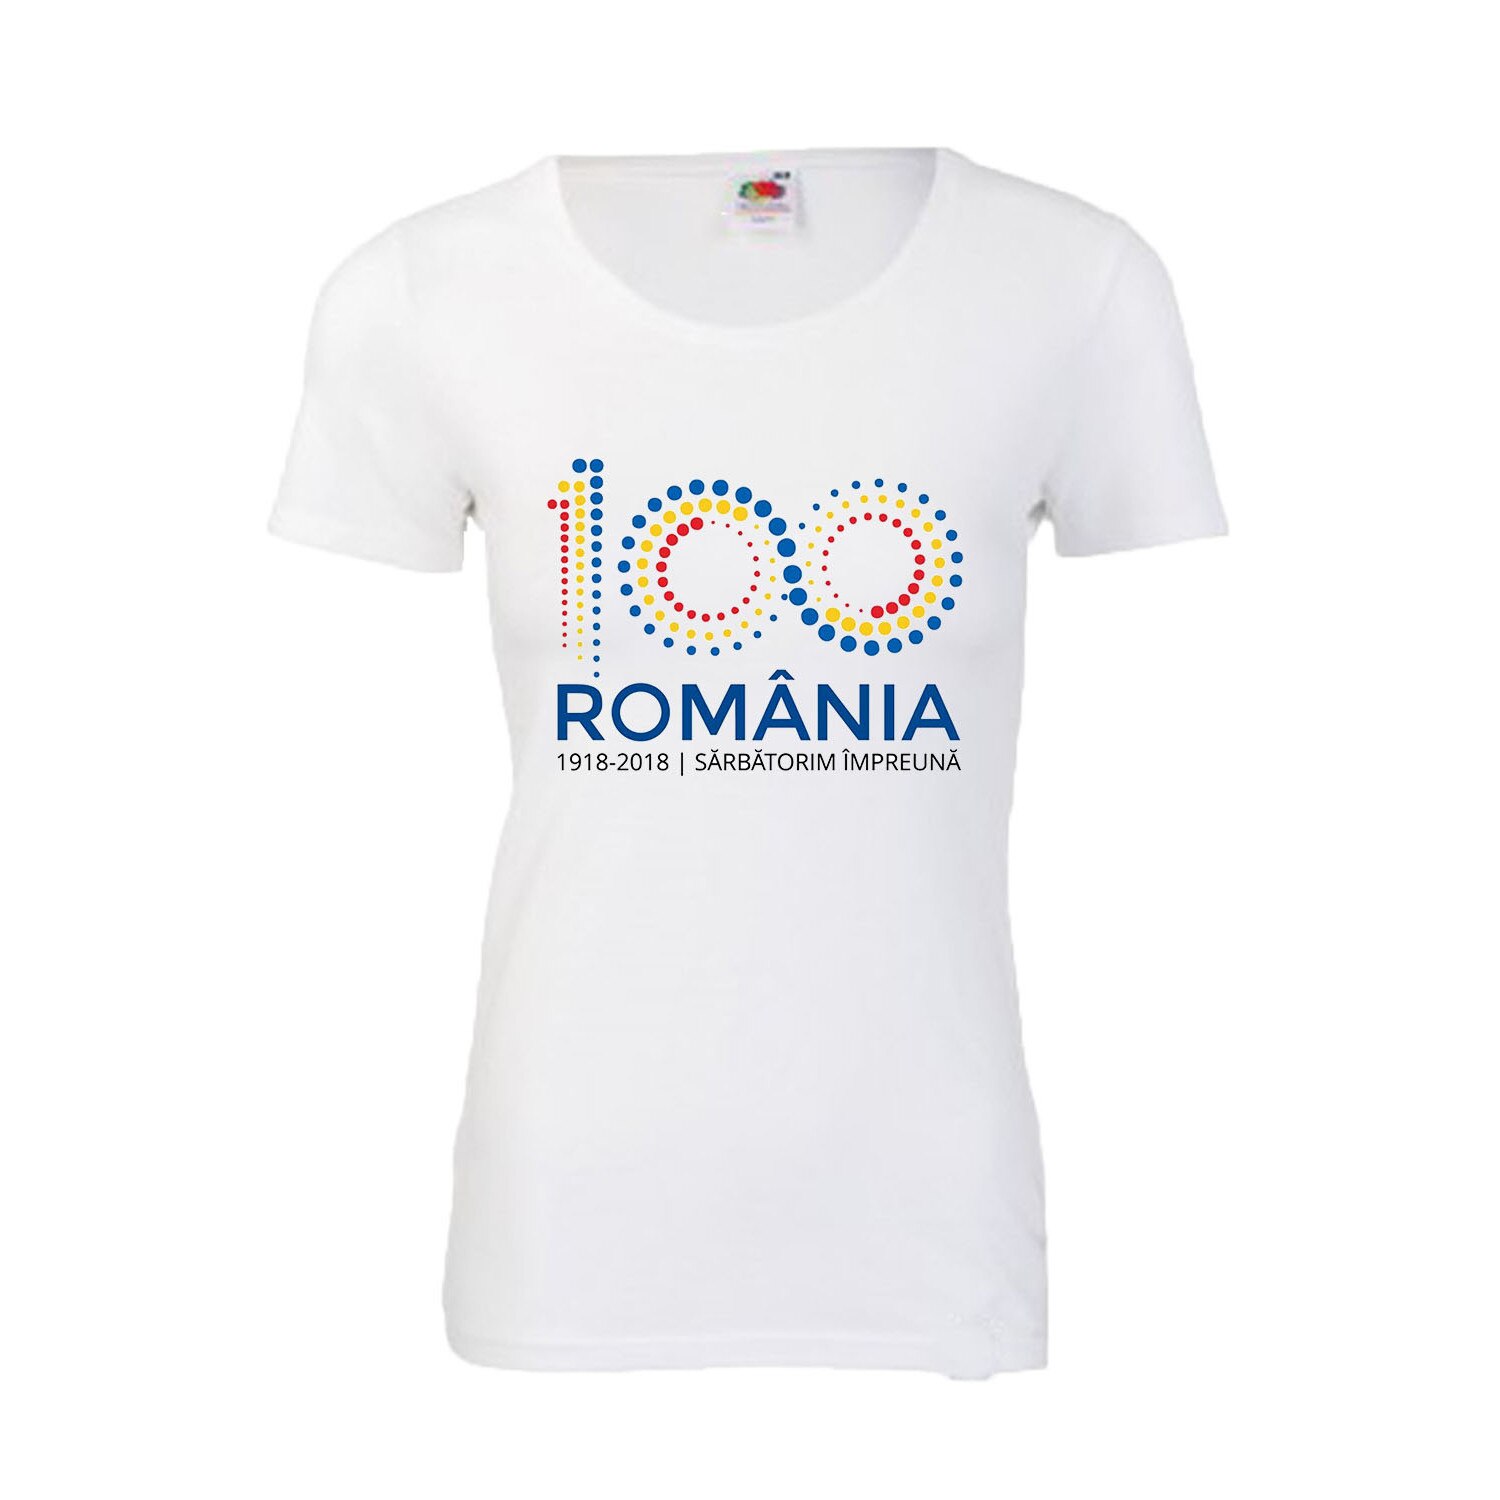 Child swap remove Tricou dama centenar Romania logo oficial S - eMAG.ro